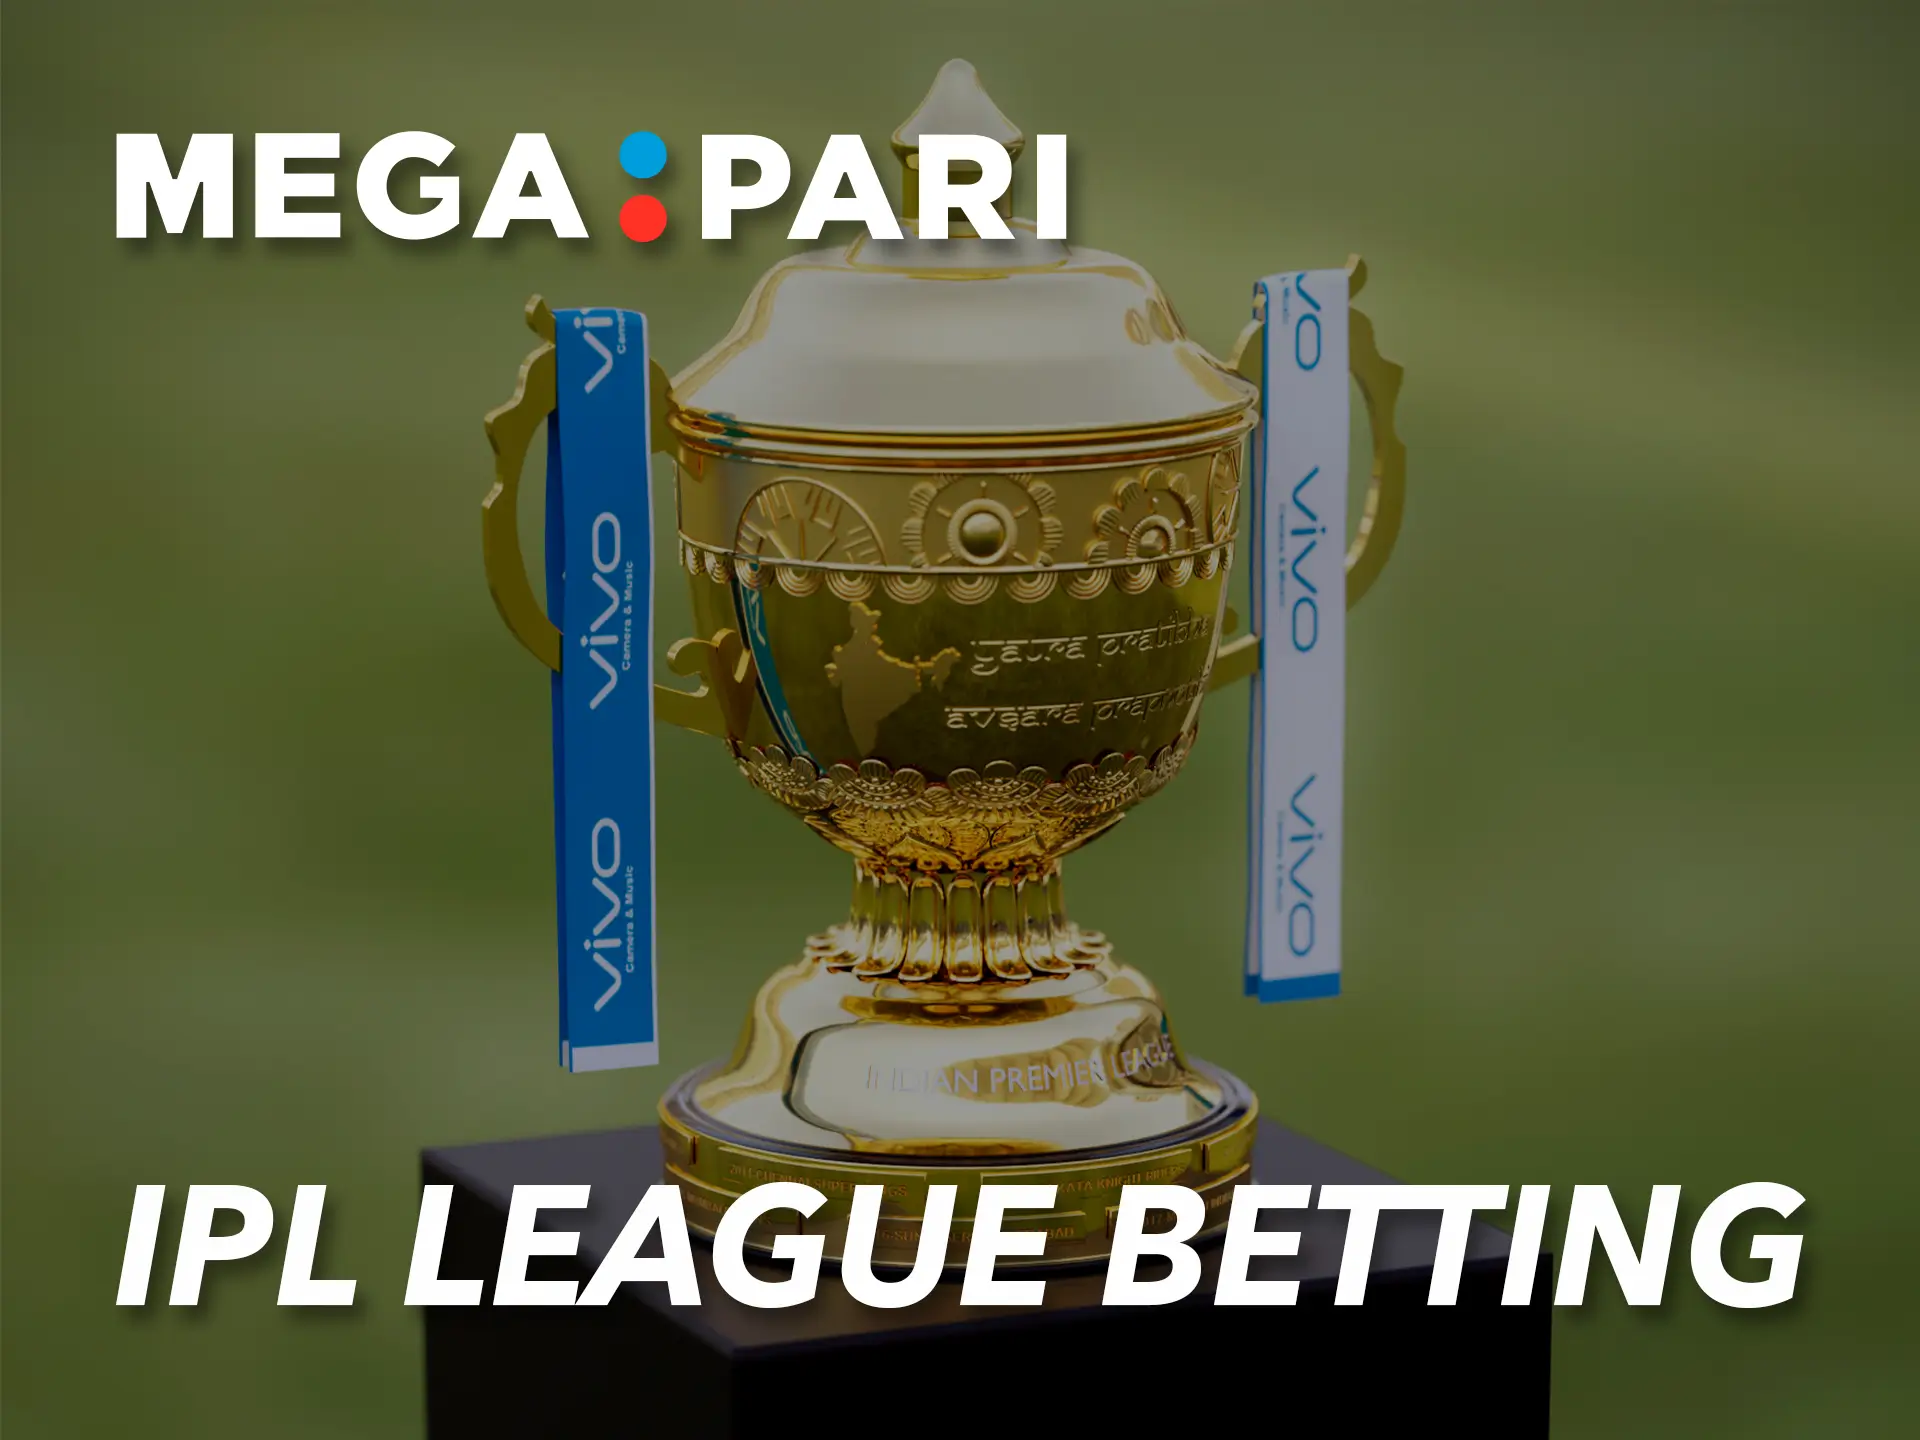 Megapari has registered the biggest cricket tournament in India.